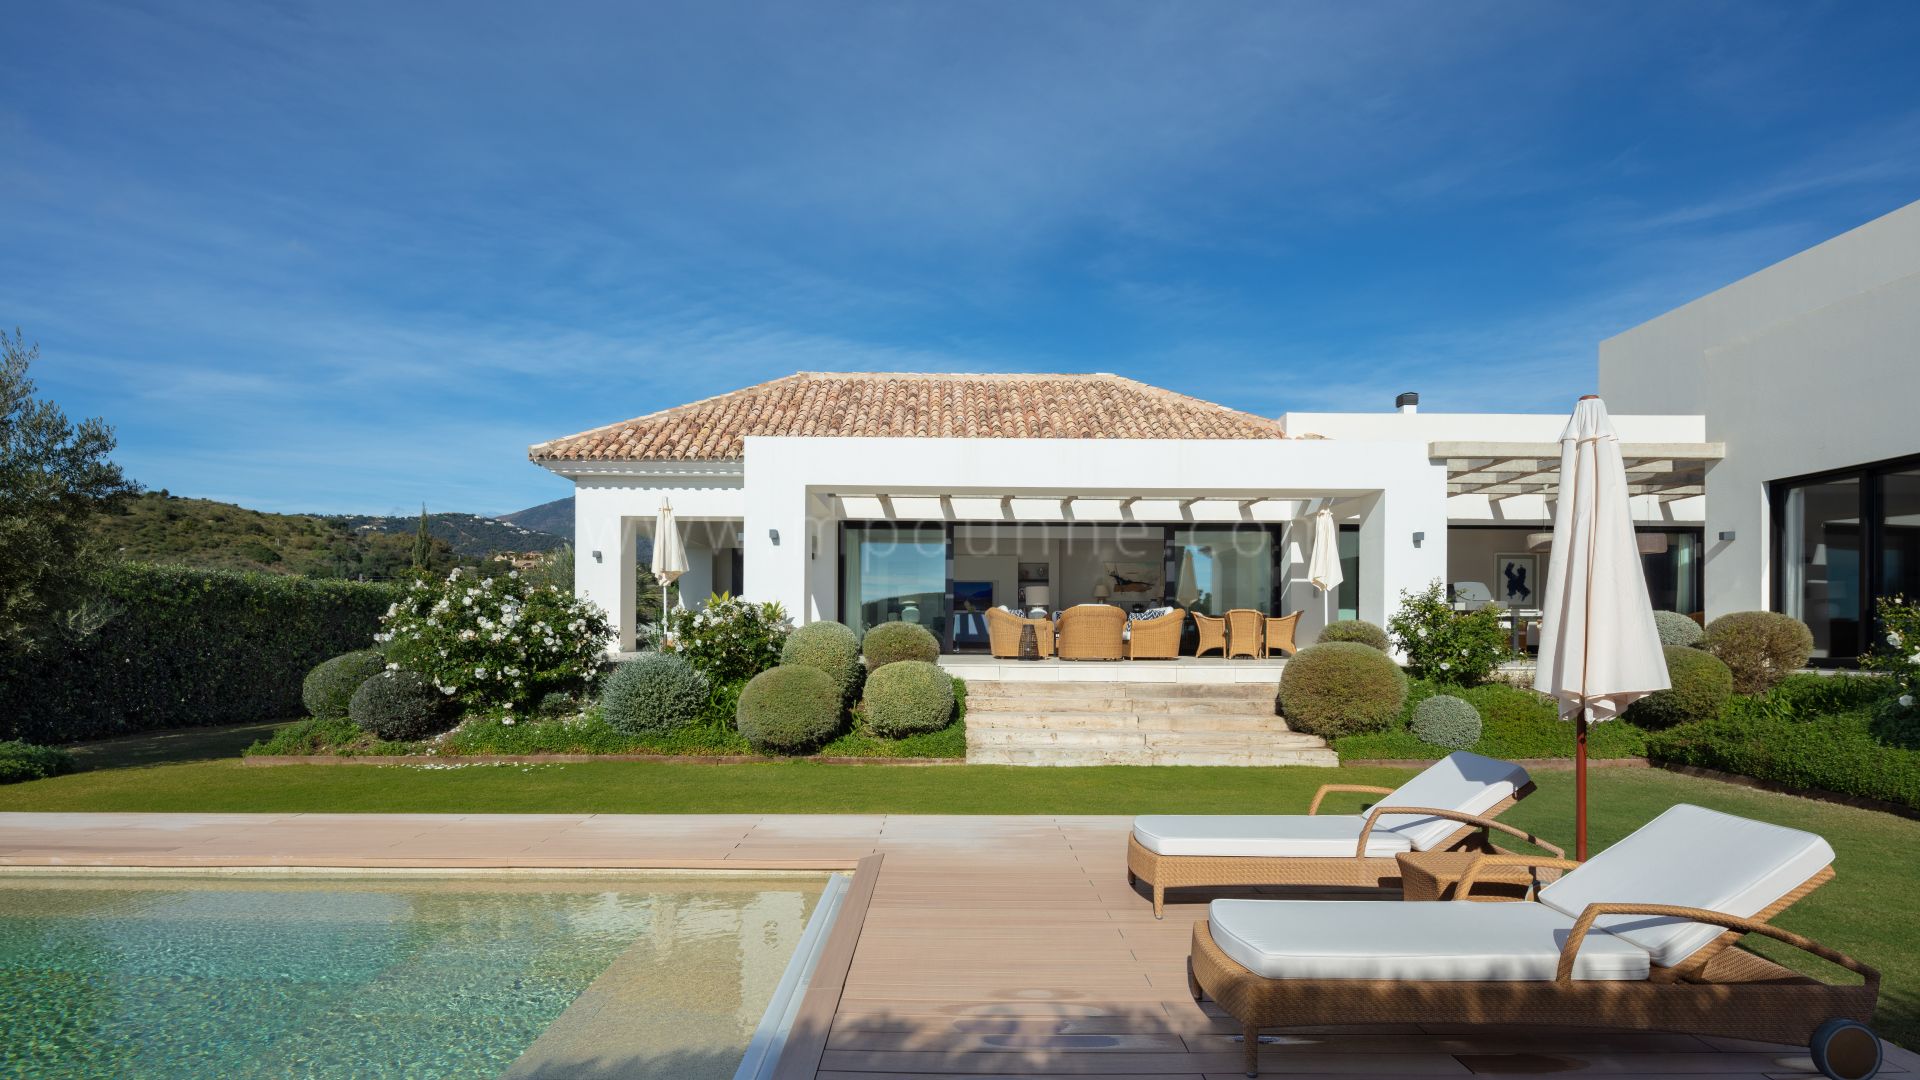 Villa de estilo mediterráneo con vistas en el valle del golf